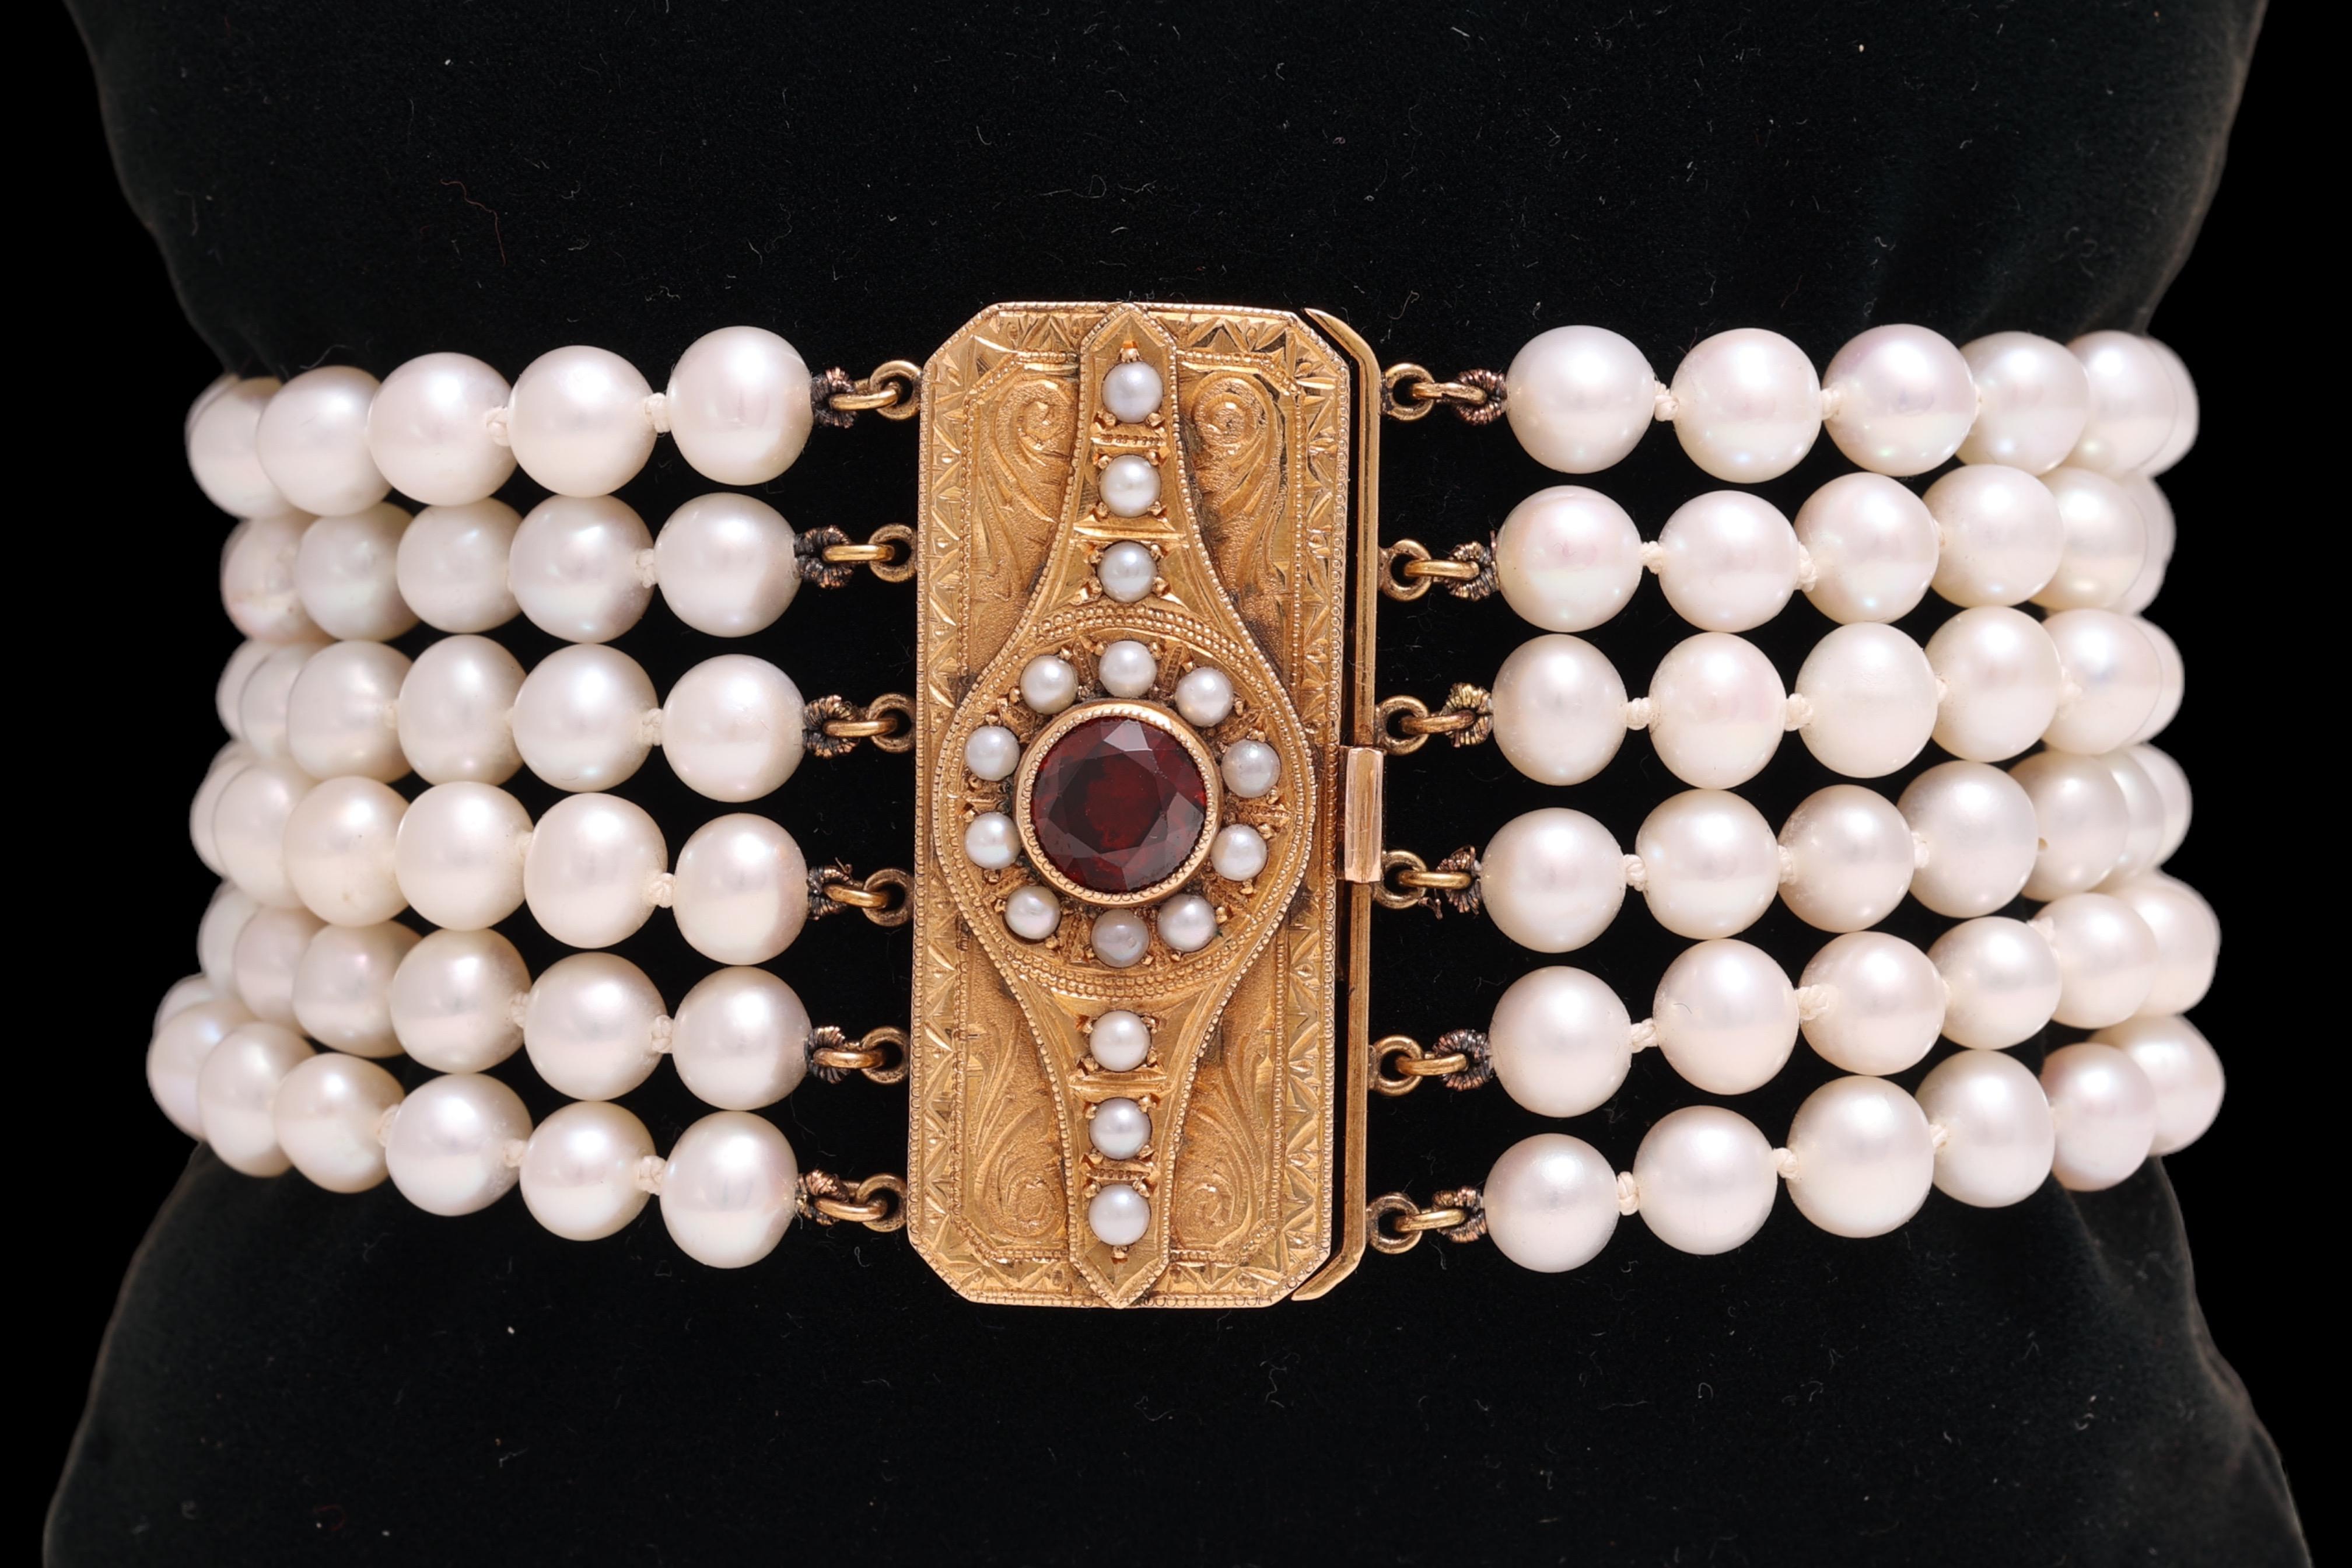 Wunderschönes Armband mit 6 Reihen japanischer Akoya-Perlen & Art deco Goldschließe mit 1ct. Granat 

Granat: Roter Granatstein 1 ct. 

Perlen: 174 Perlen mit einem Durchmesser von 6 mm, 16 Mini-Perlen mit einem Durchmesser von 2,2 mm

MATERIAL: 18